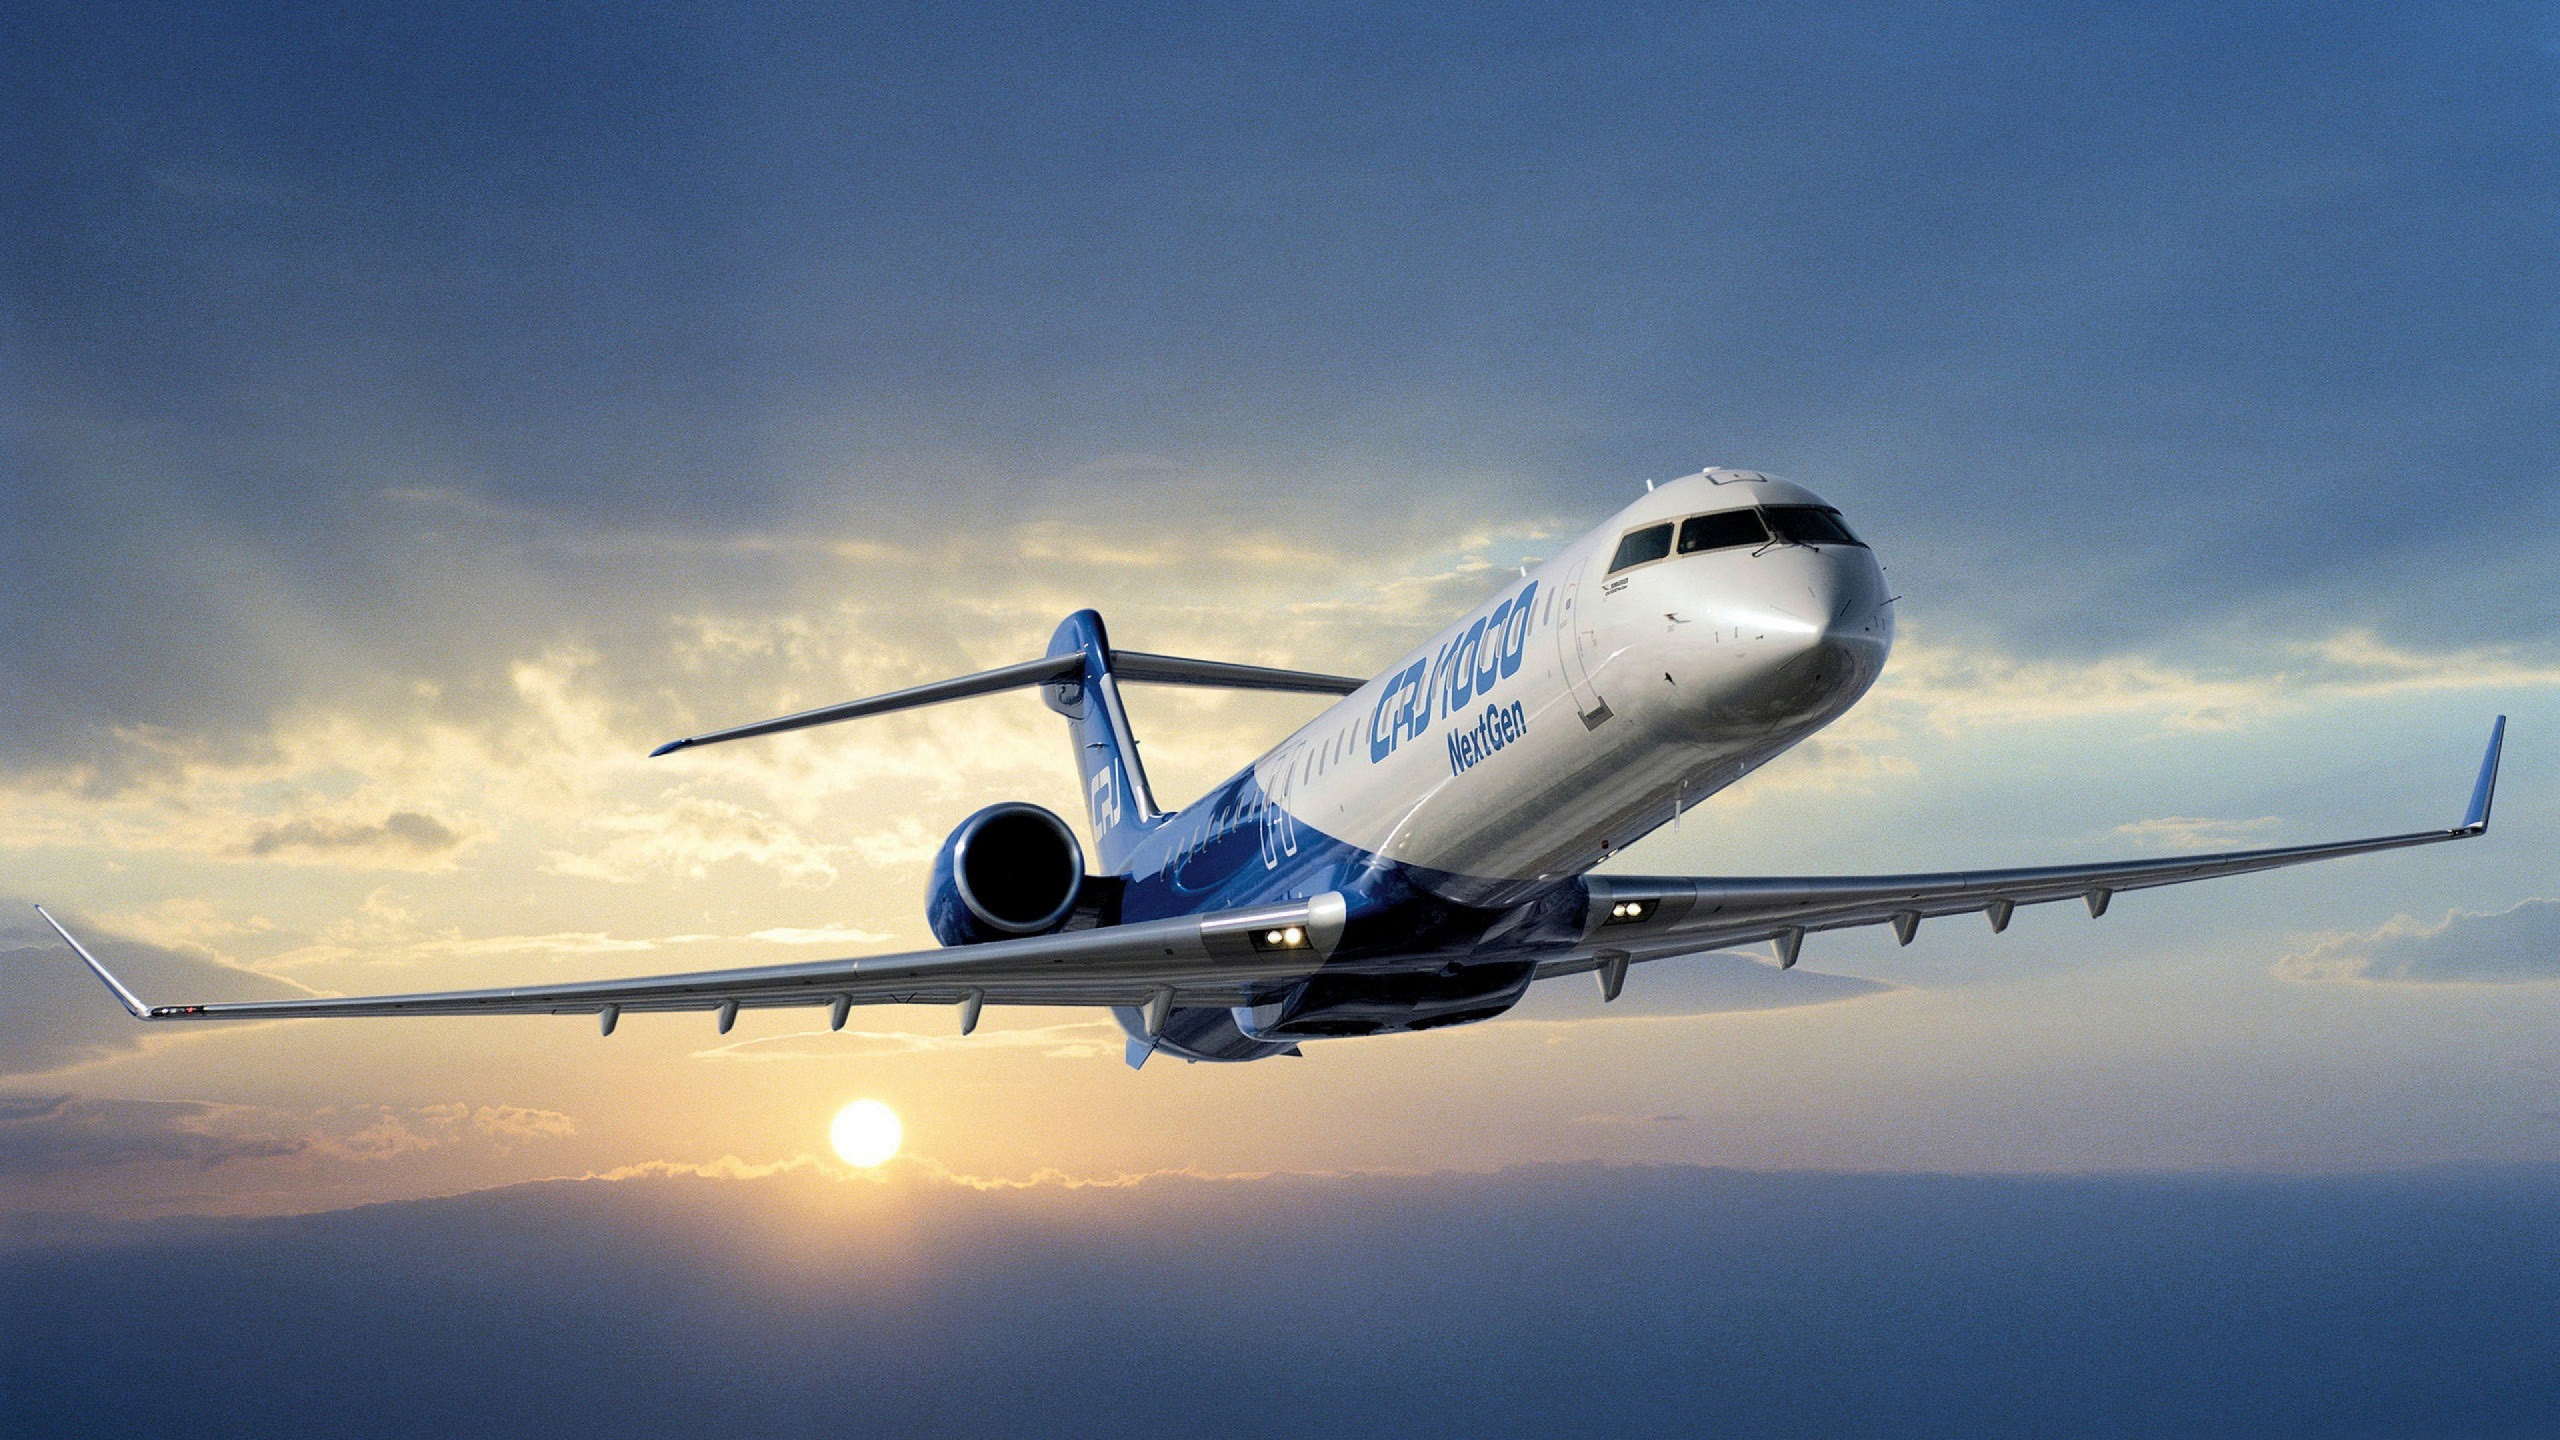 Weißes Und Blaues Passagierflugzeug im Flug. Wallpaper in 2560x1440 Resolution